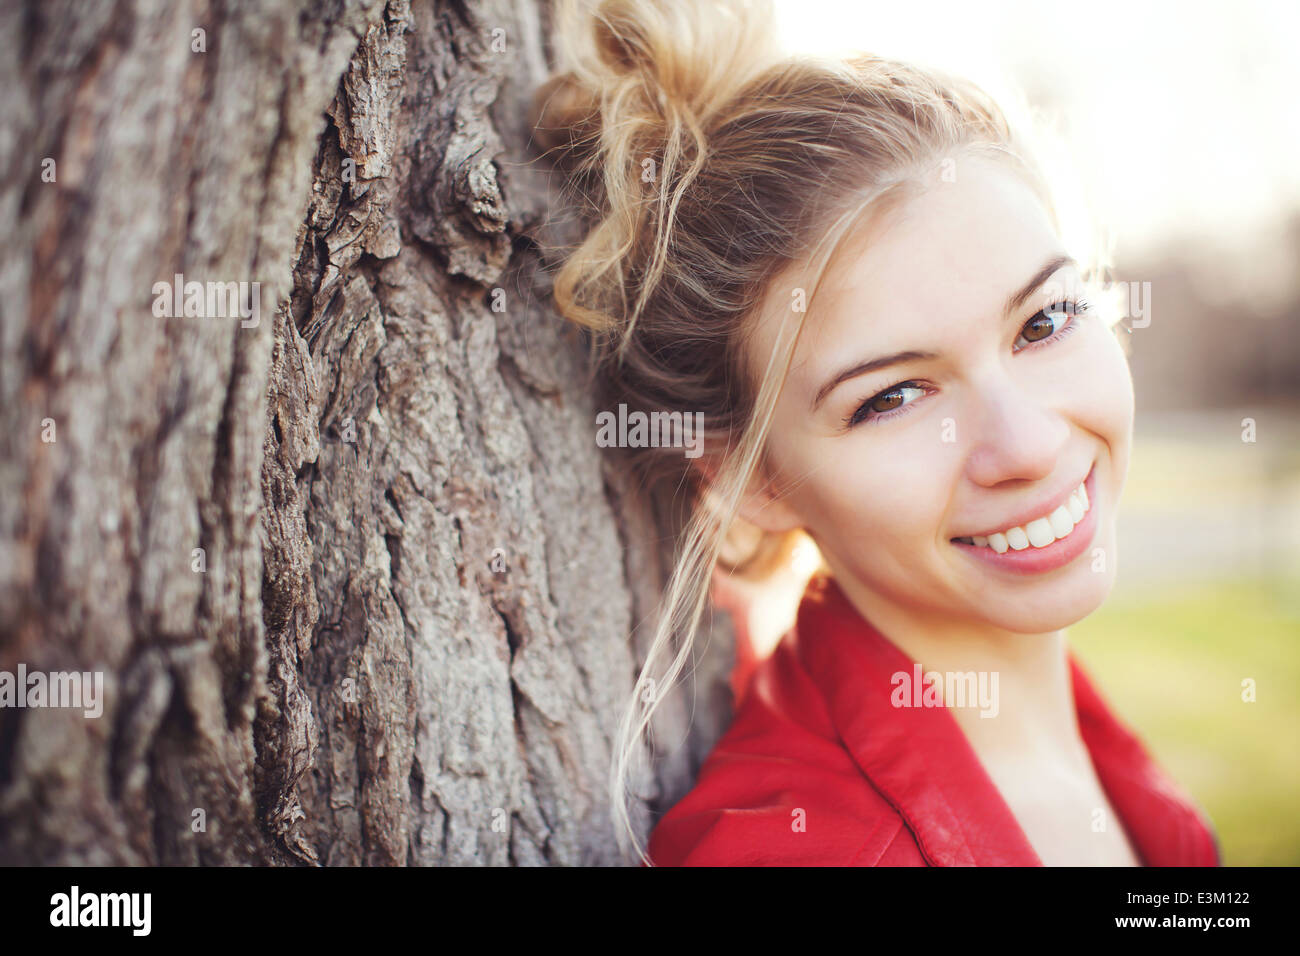 Retrato de mujer joven (18-19) sonriente apoyado en tronco de árbol Foto de stock